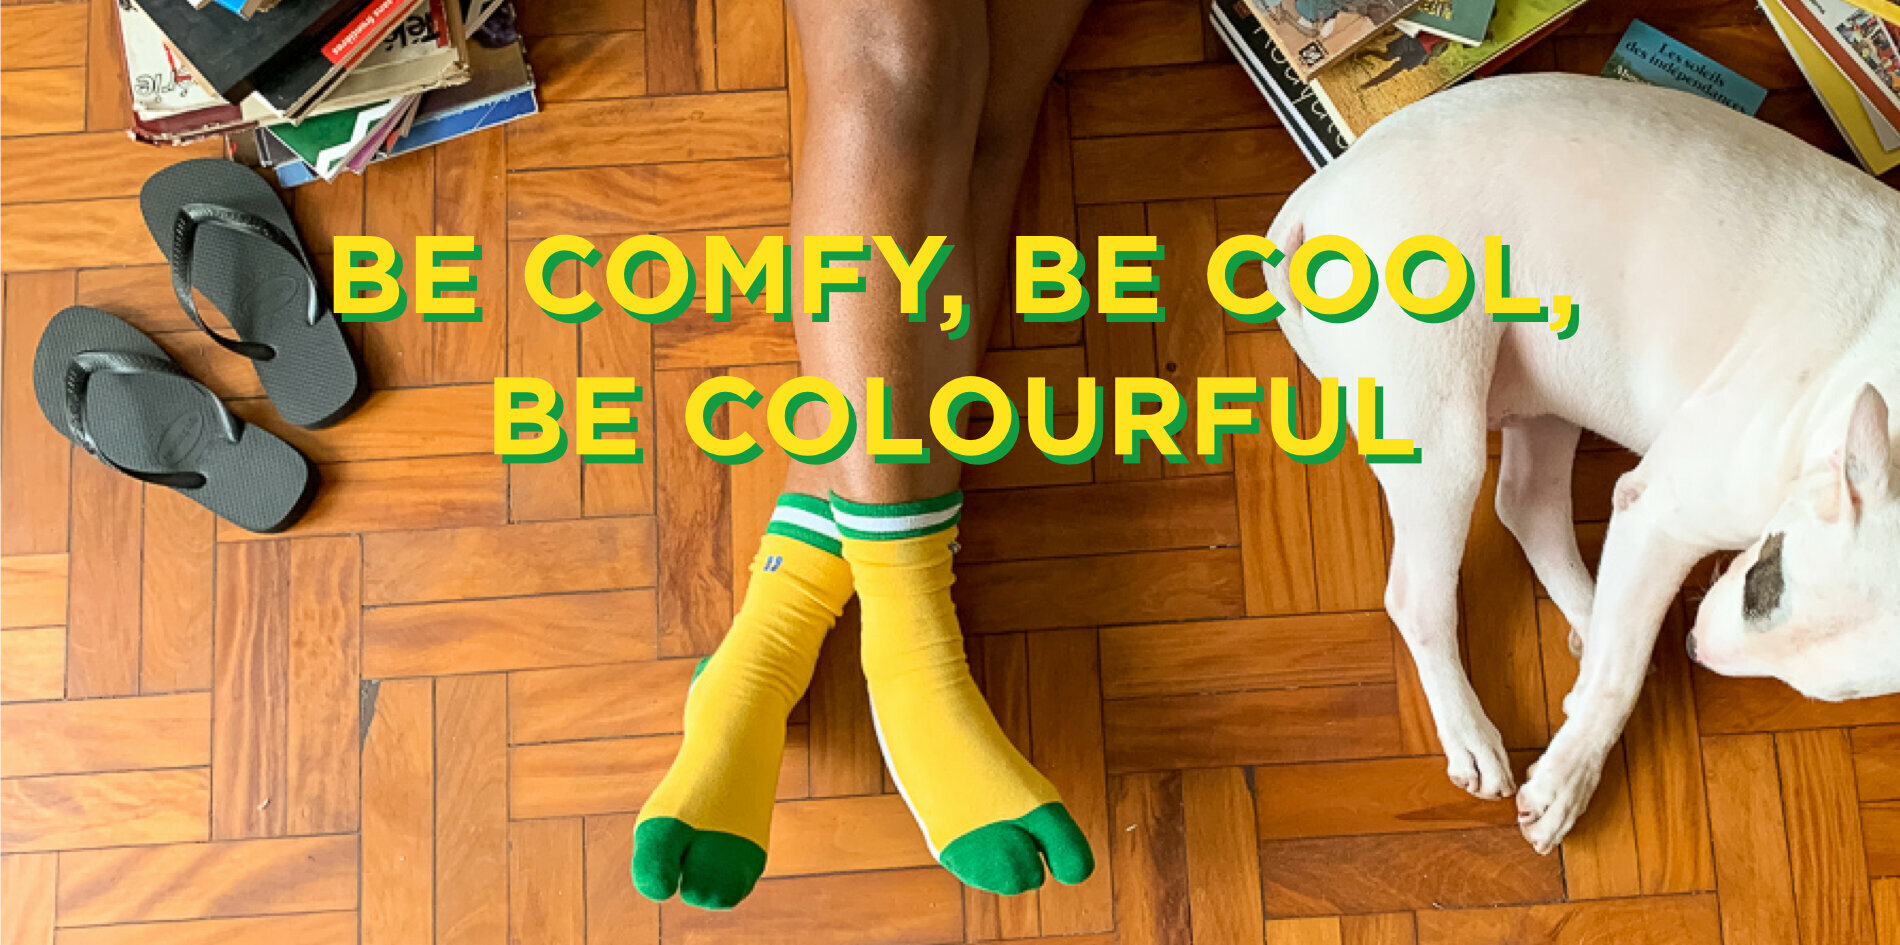 Be comfy, be cool,

laat je kleuren zien